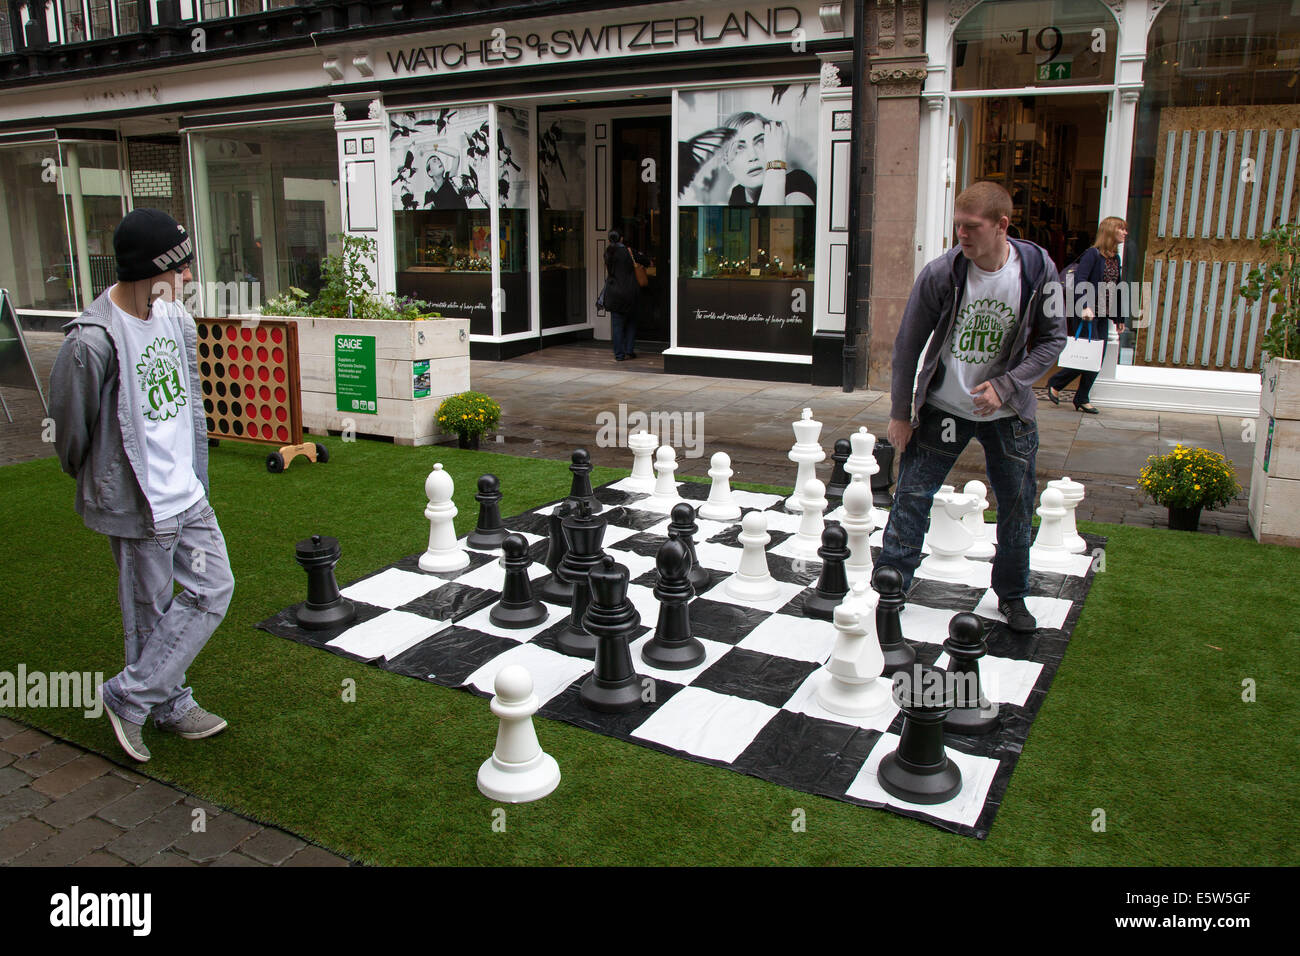 Junge Männer spielen Schach auf einem riesigen Schachbrett in der Straße,  die auf Kunstrasen verlegt ist.Manchester, Großbritannien 6th. August 2014.  Dig the City Deansgate, ein jährliches Urban Gardening Festival, das vom  Business